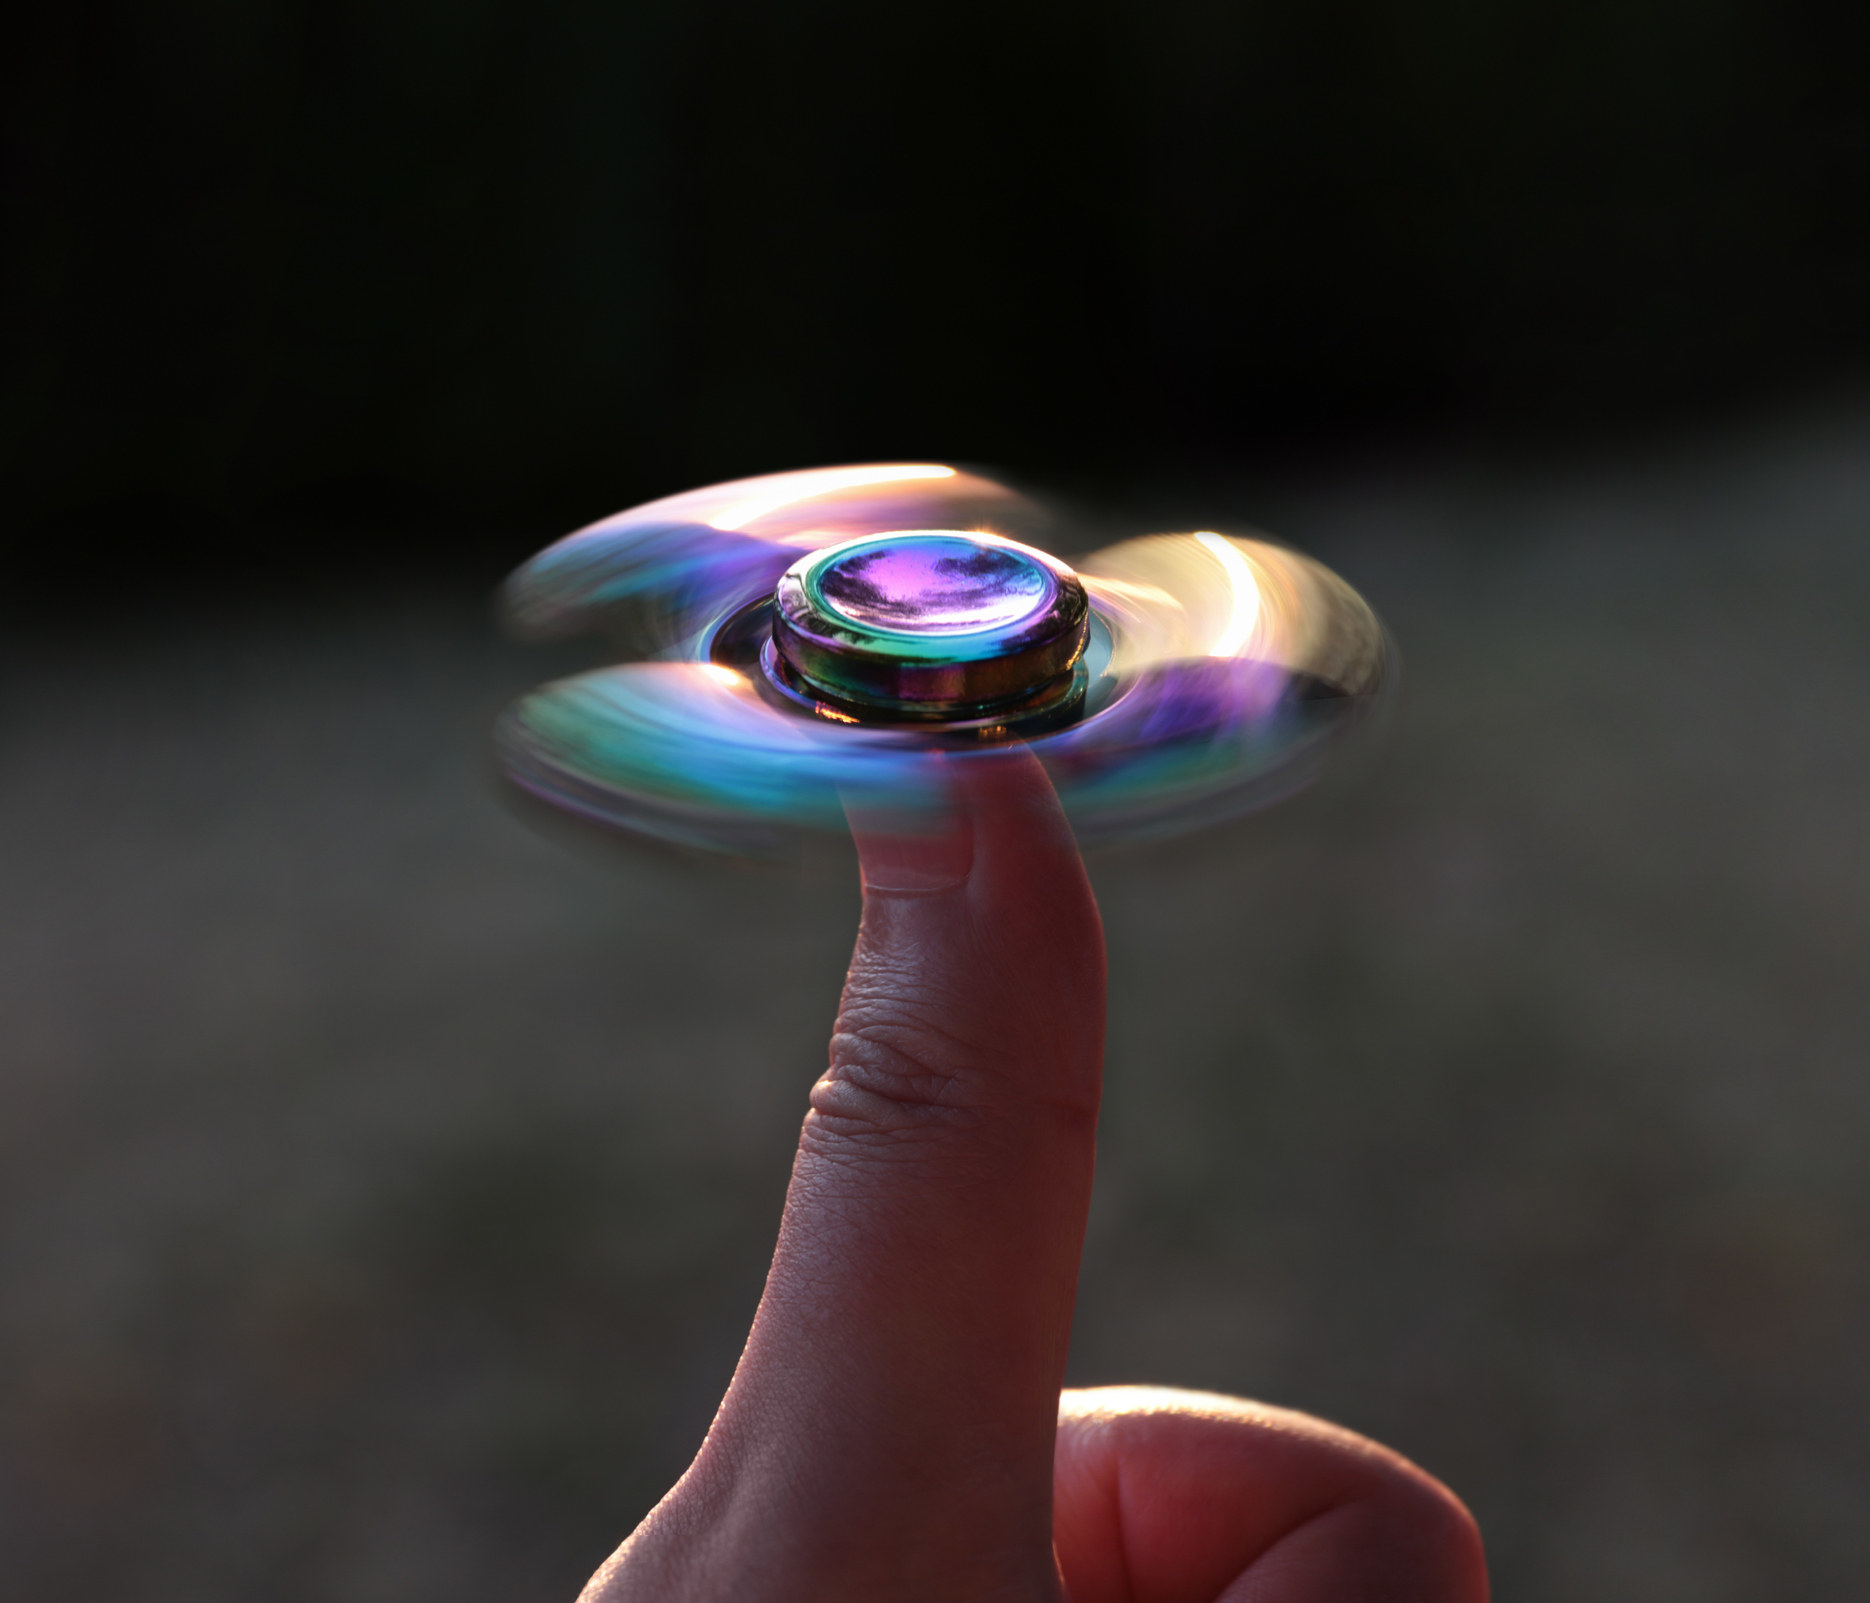 A fidget spinner